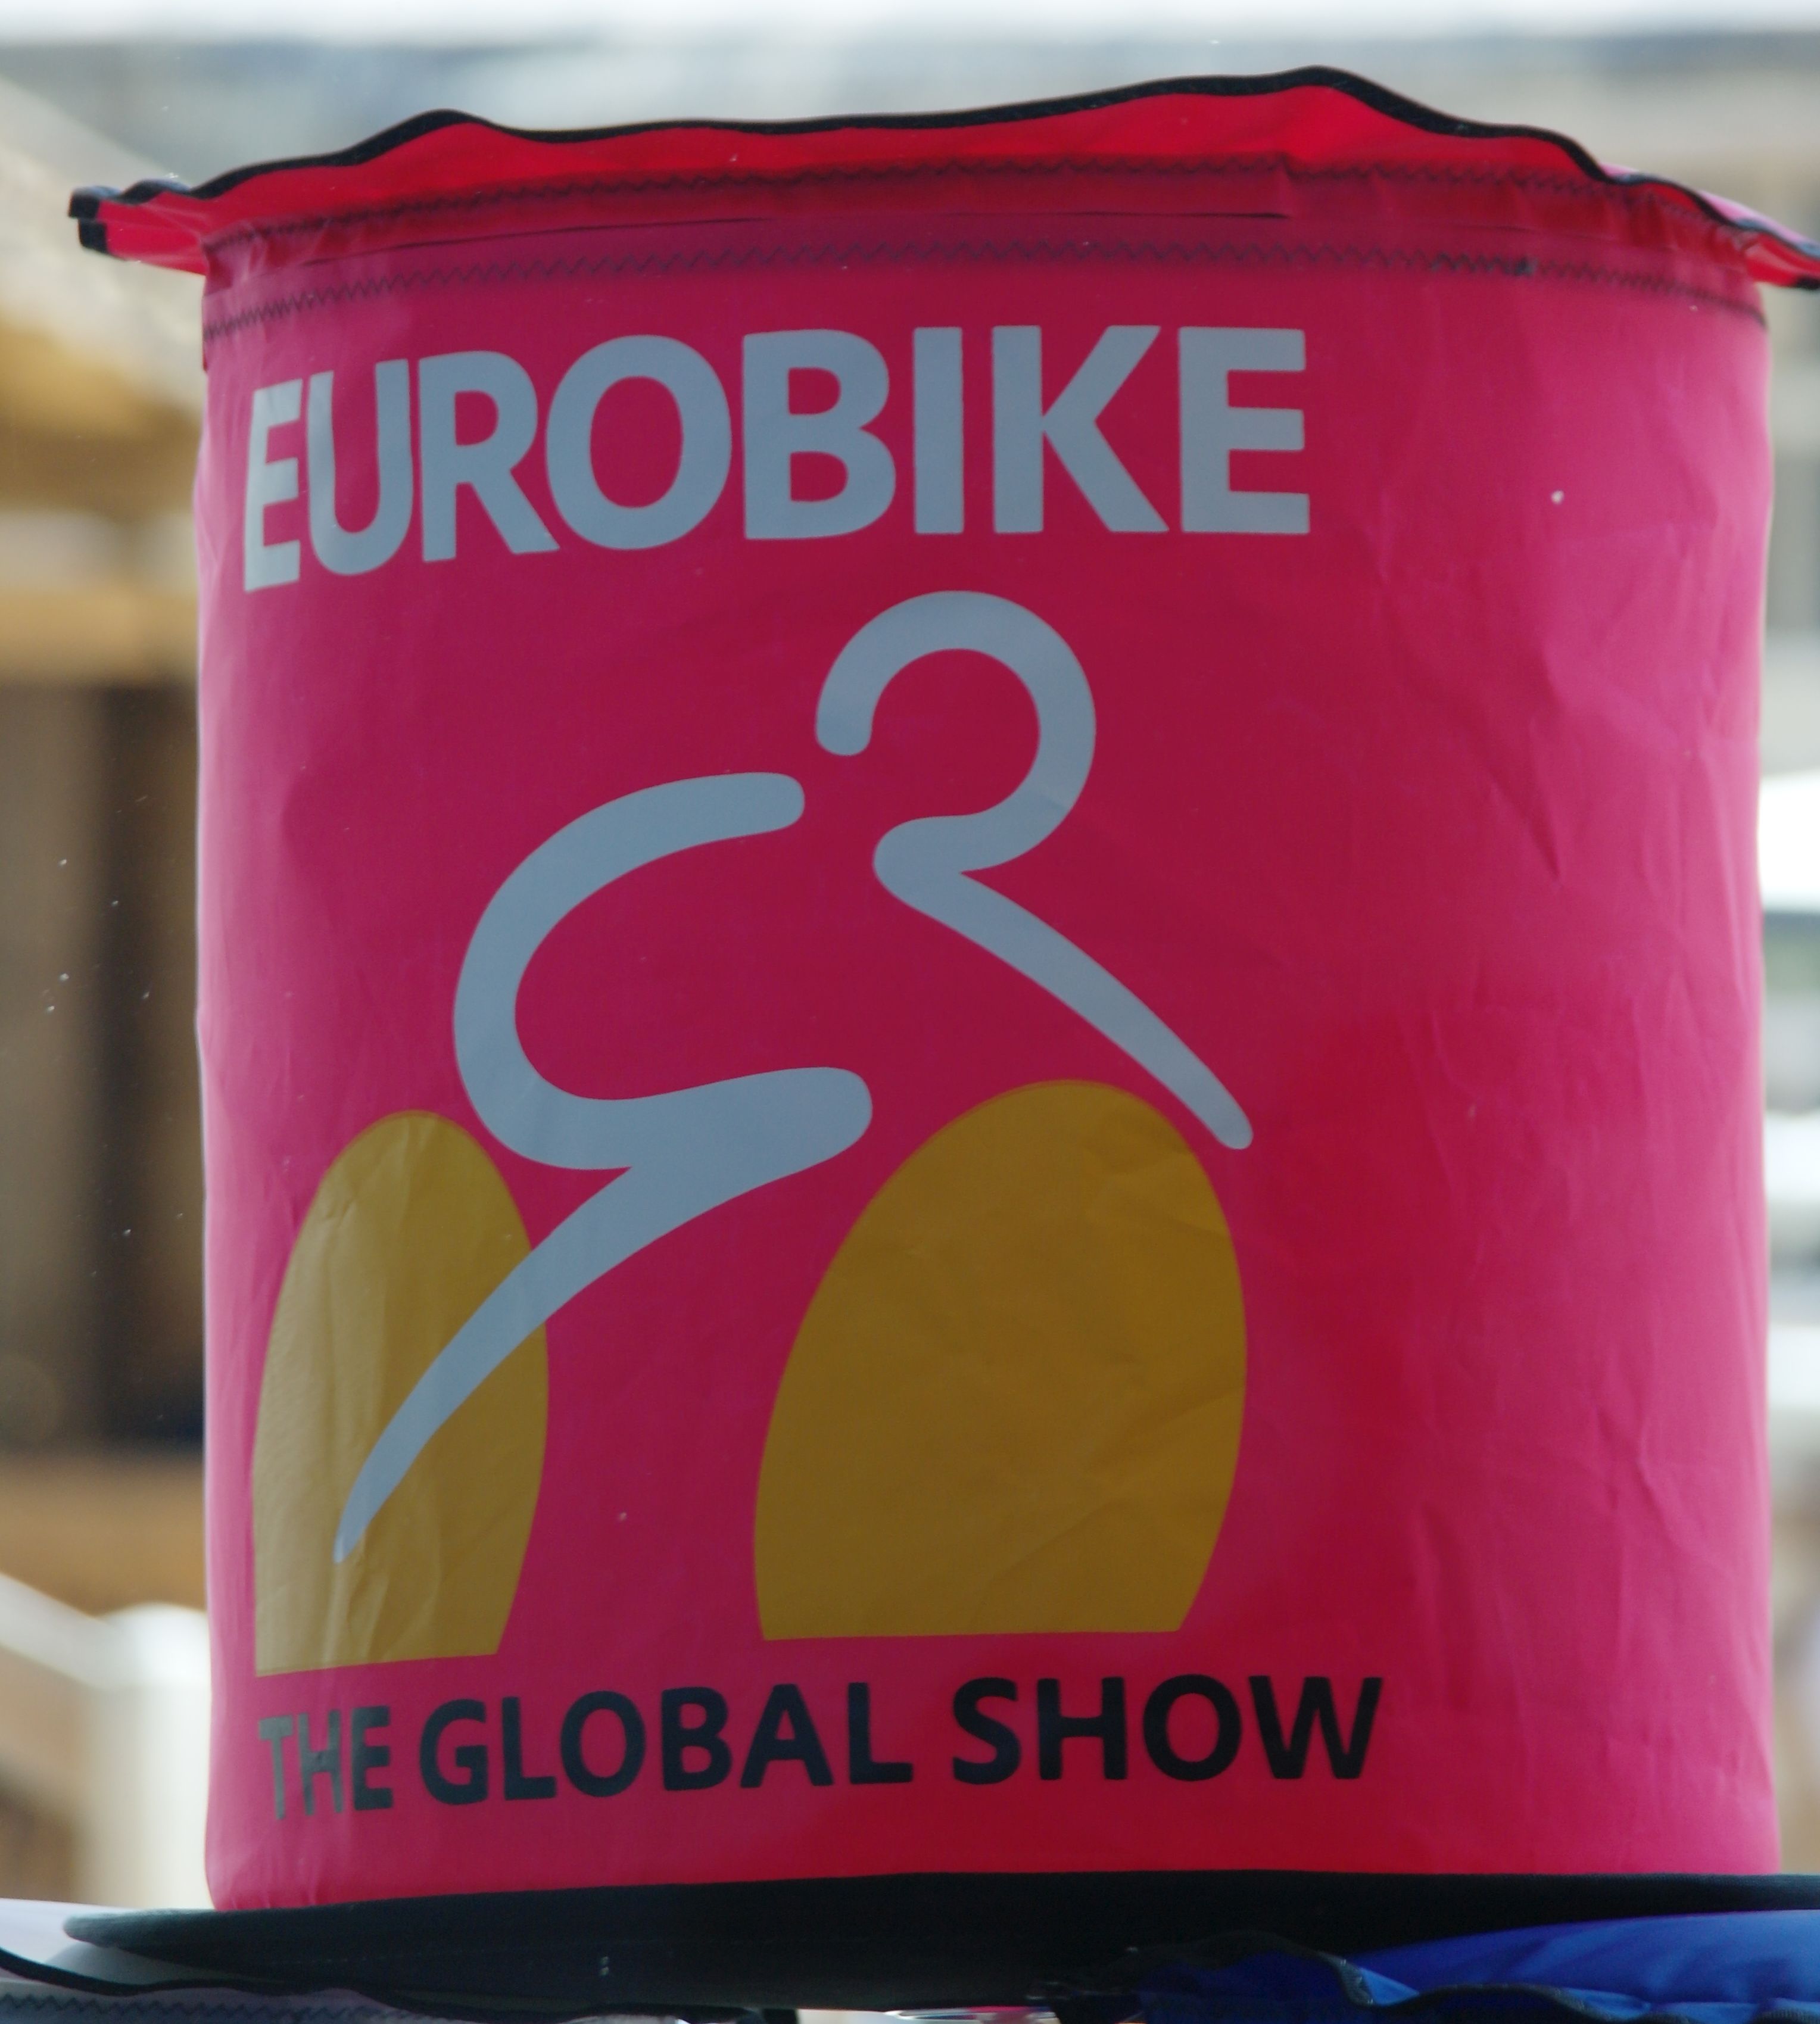 Eurobike 2019 in Friedrichshafen